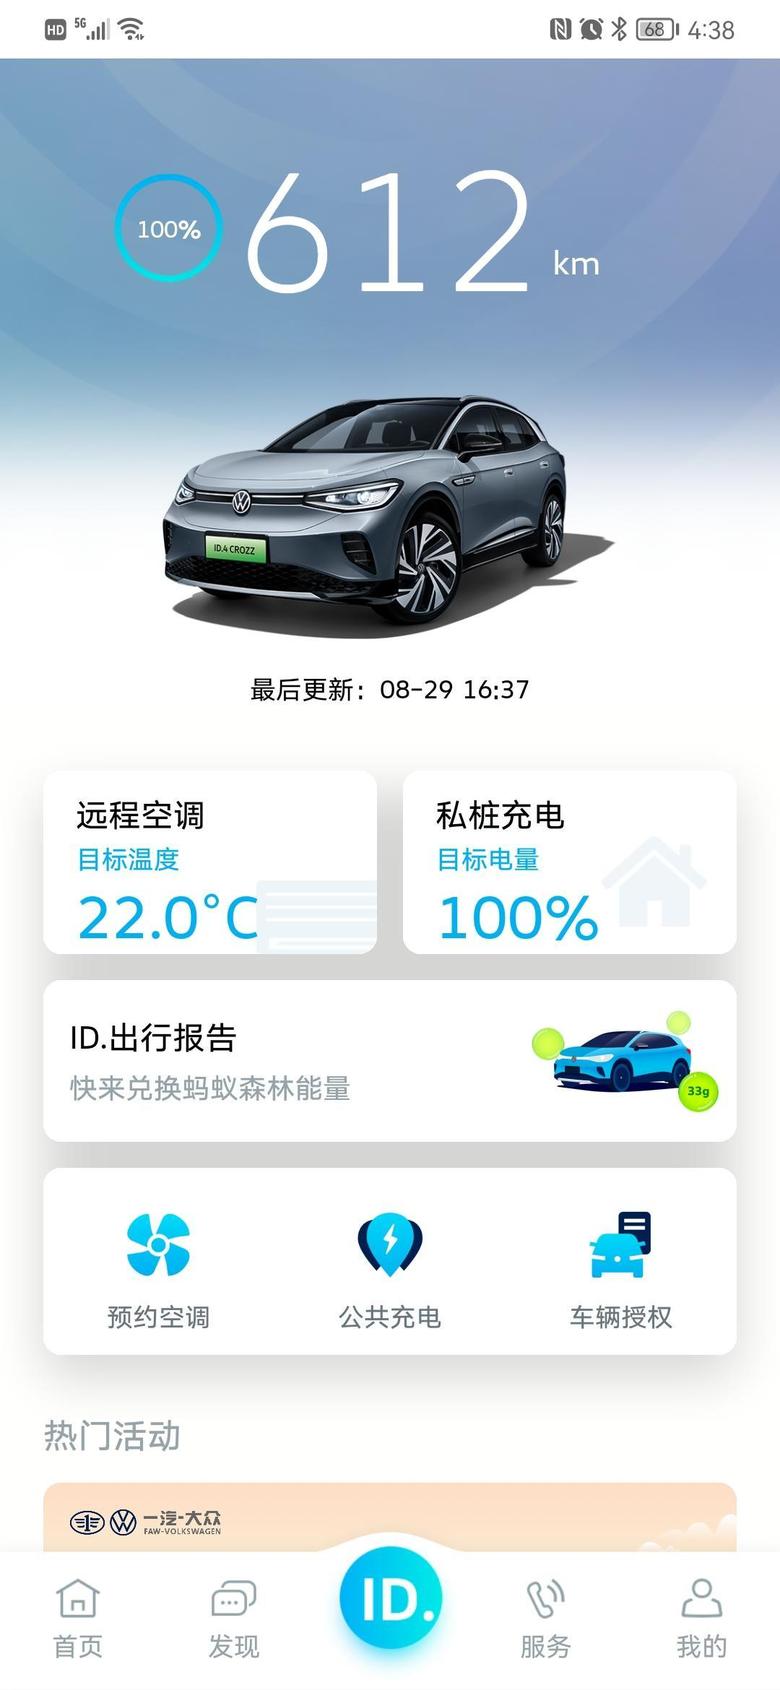 id.4 crozz已经开上ID4三周了，北京郊区五环到六环路全程往返62公里，其中路过机场北线高速往返有14公里，晚上下班开空调，早上偶尔开空调，有时电耗最低能12个以下。图是刚刚充满电未开空调预测的里程。